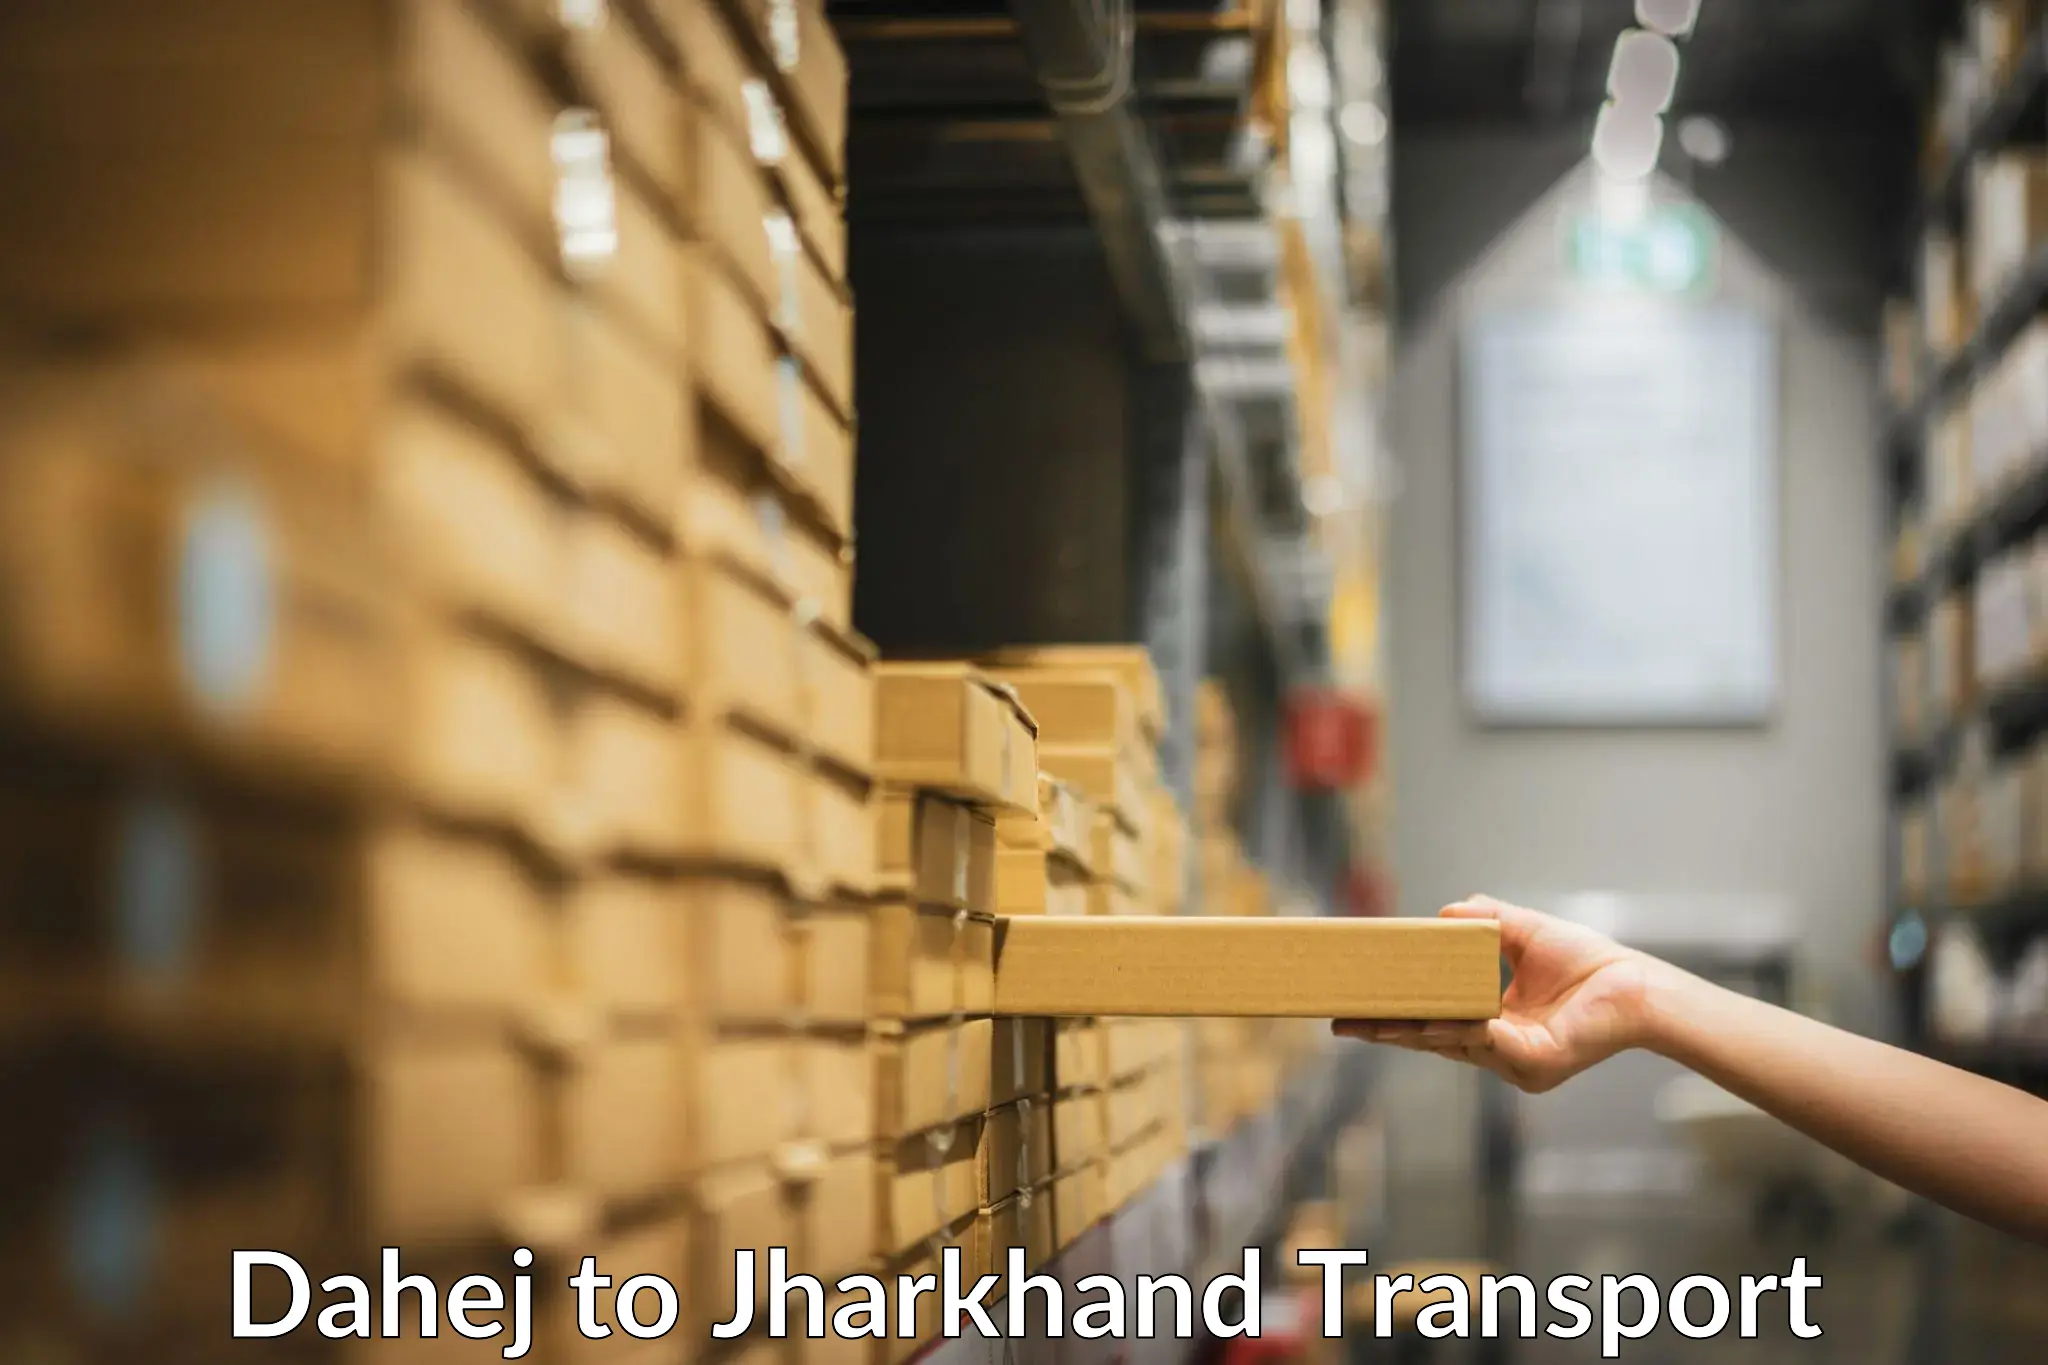 Online transport service Dahej to Jamshedpur